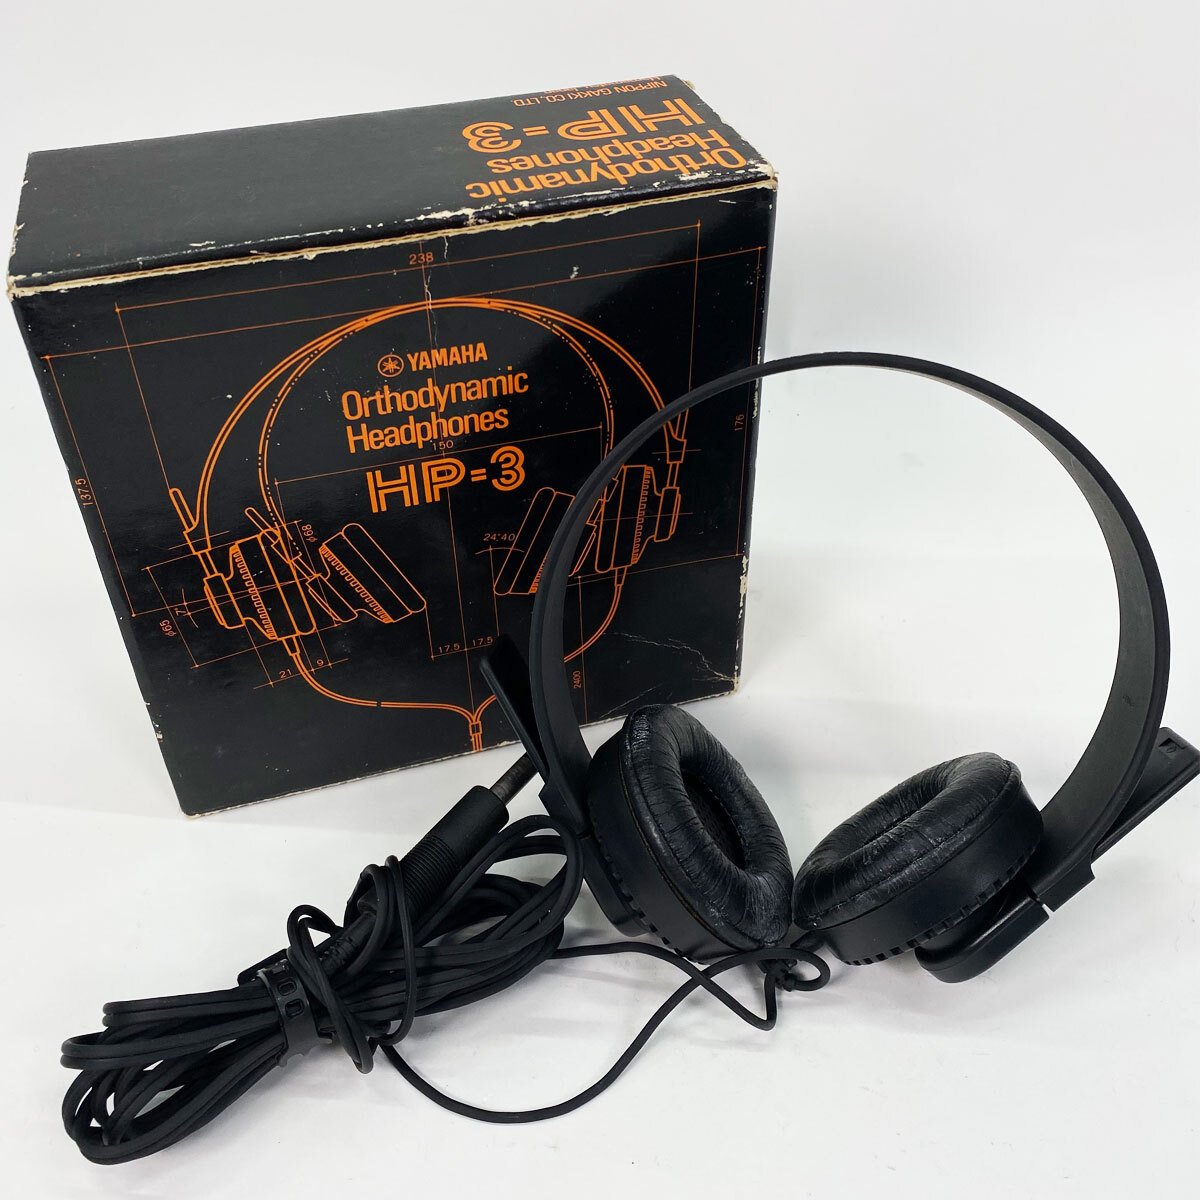 ヤマハ YAMAHA オルソダイナミック ヘッドフォン Orthodynamic Headphons HP-3 音響機器 オーディオ機器 現状品 中古品 nn0101 114の画像1